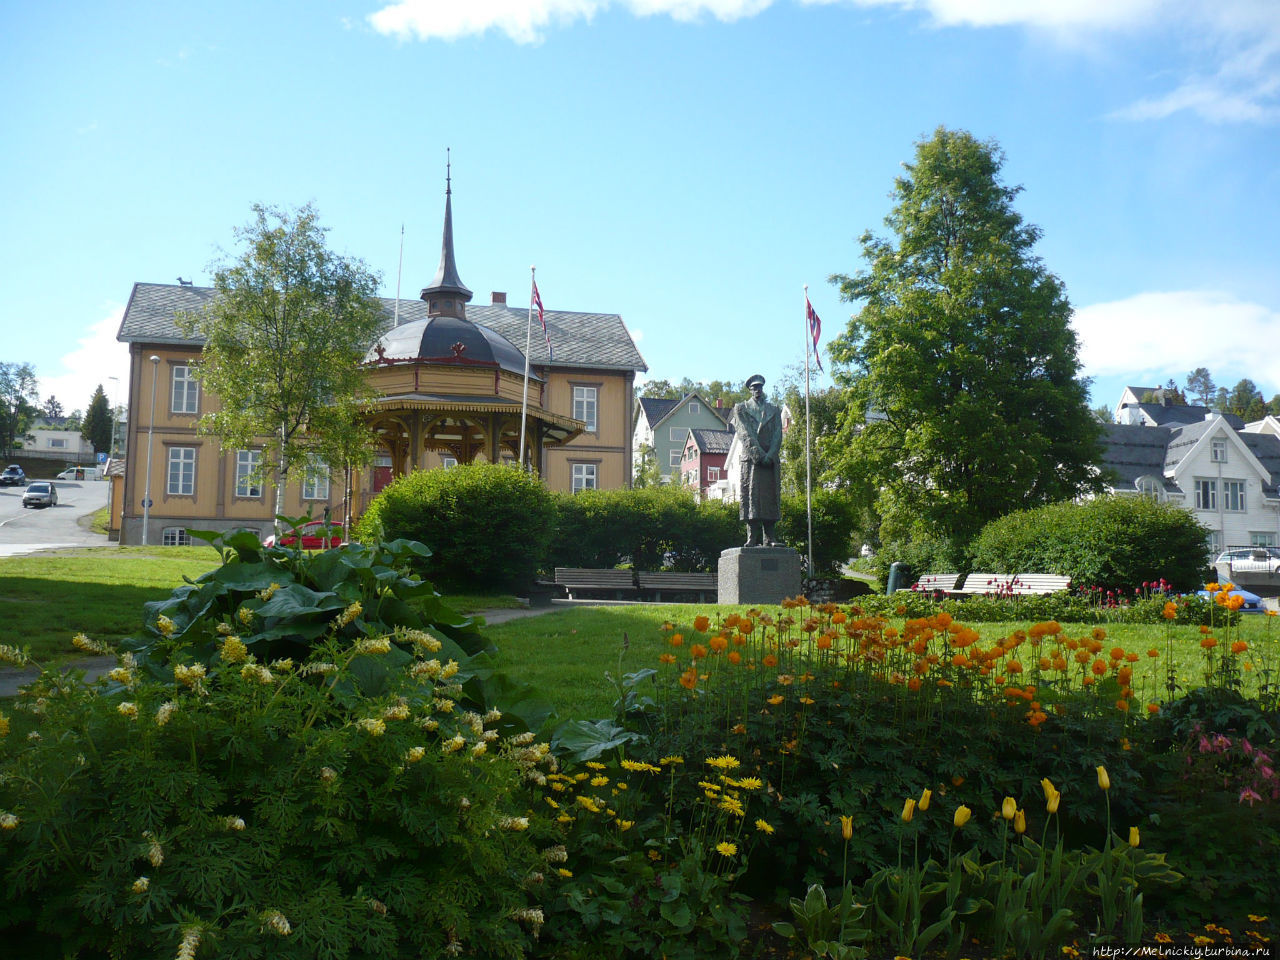 Памятник королю Хокону VII Тромсё, Норвегия